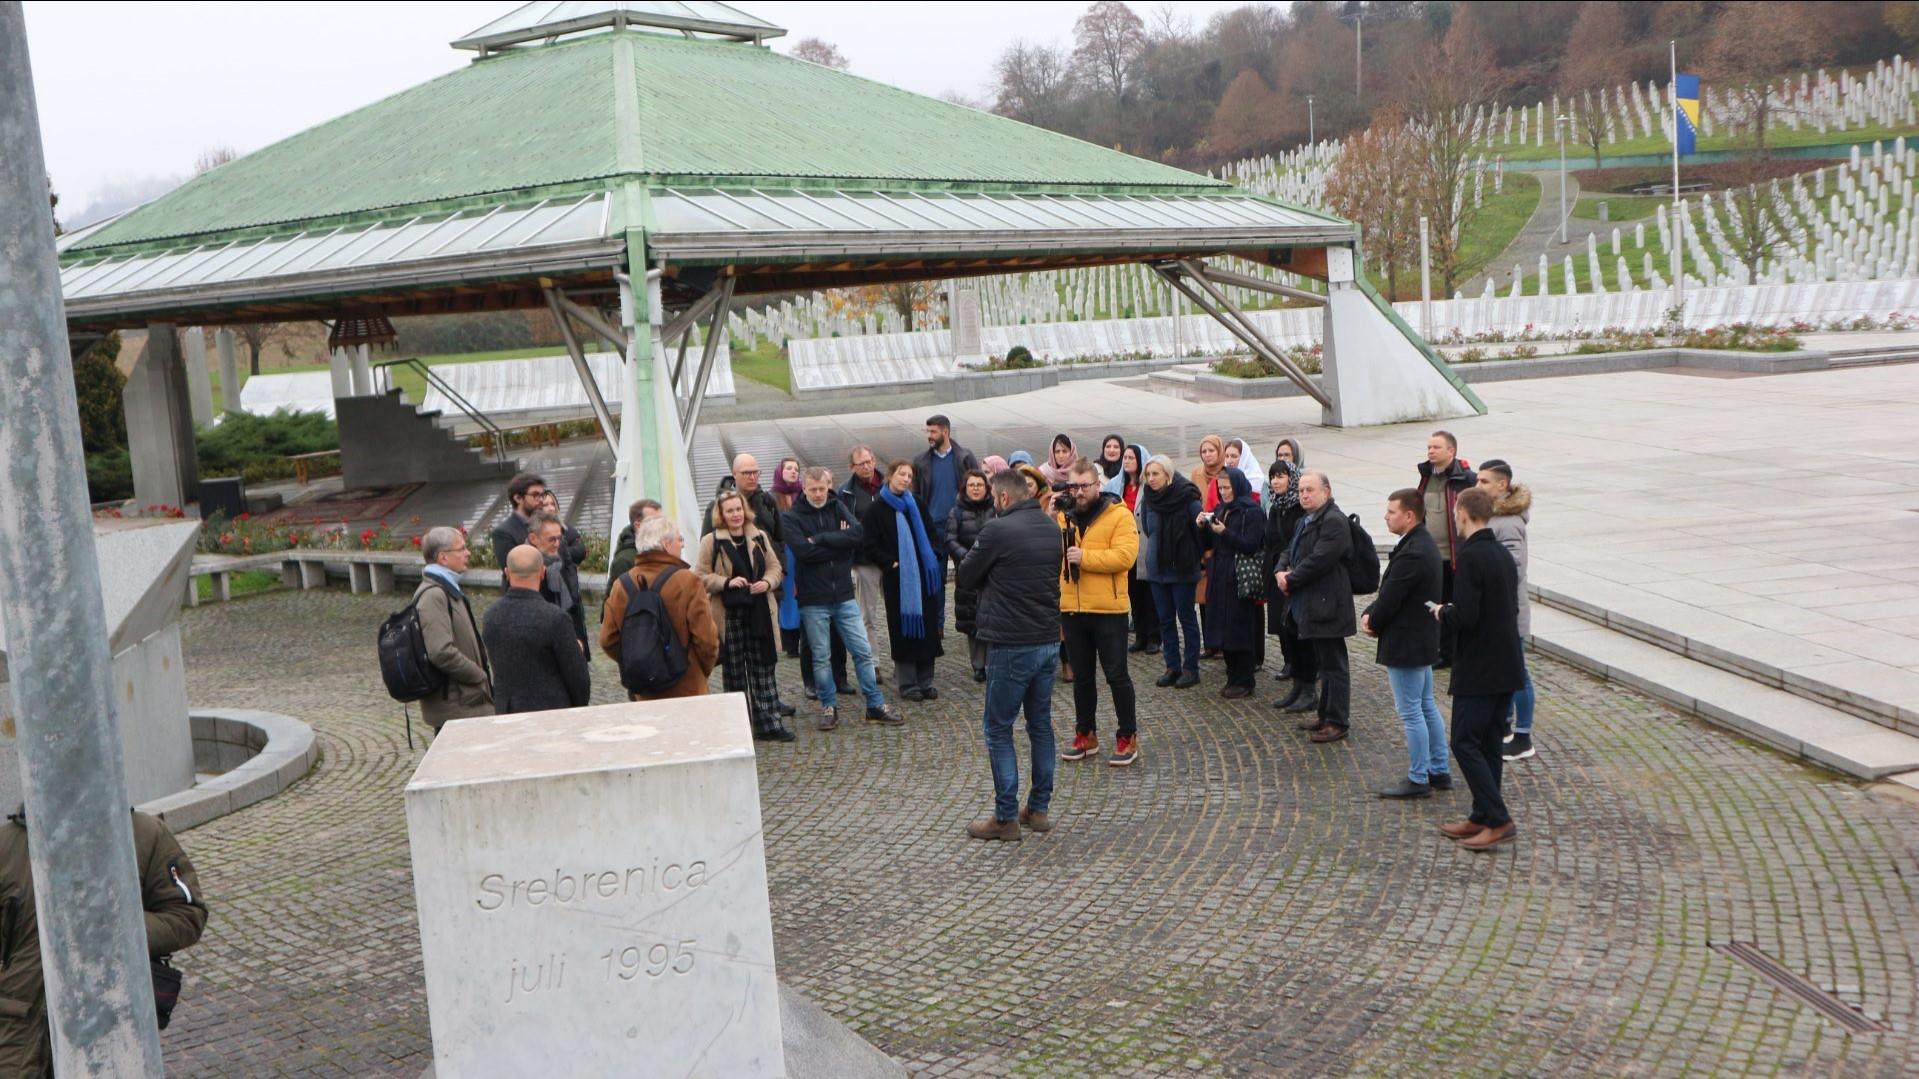 Više od 150 rudara će obilježiti Dan rudara u Memorijalnom centru Srebrenica - Avaz